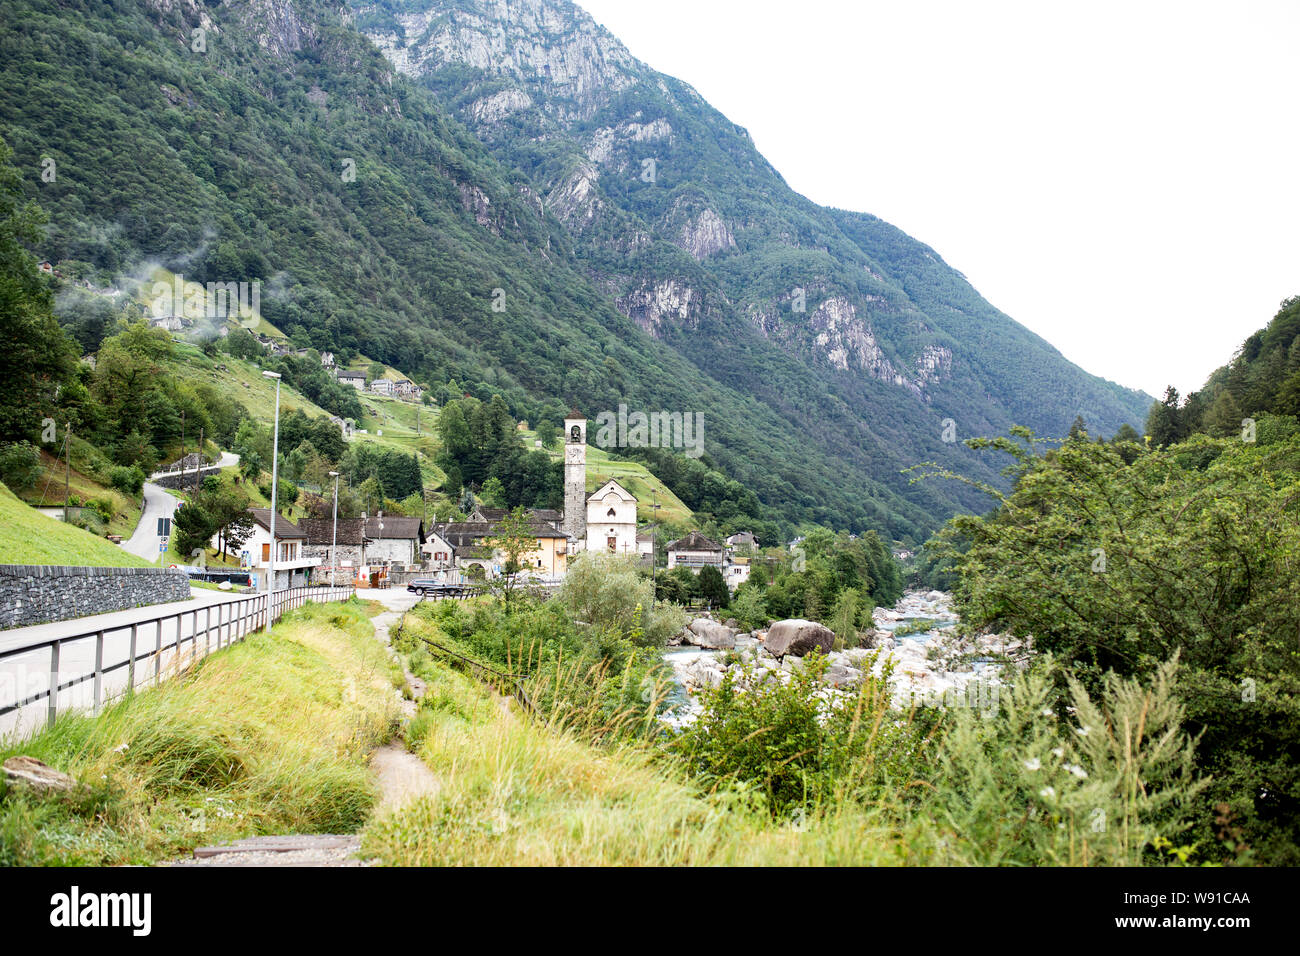 El Valle de Verzasca y río, mirando hacia la ciudad de Lavertezzo y su iglesia de Santa Maria degli Angeli, en la región de Ticino de Suiza. Foto de stock